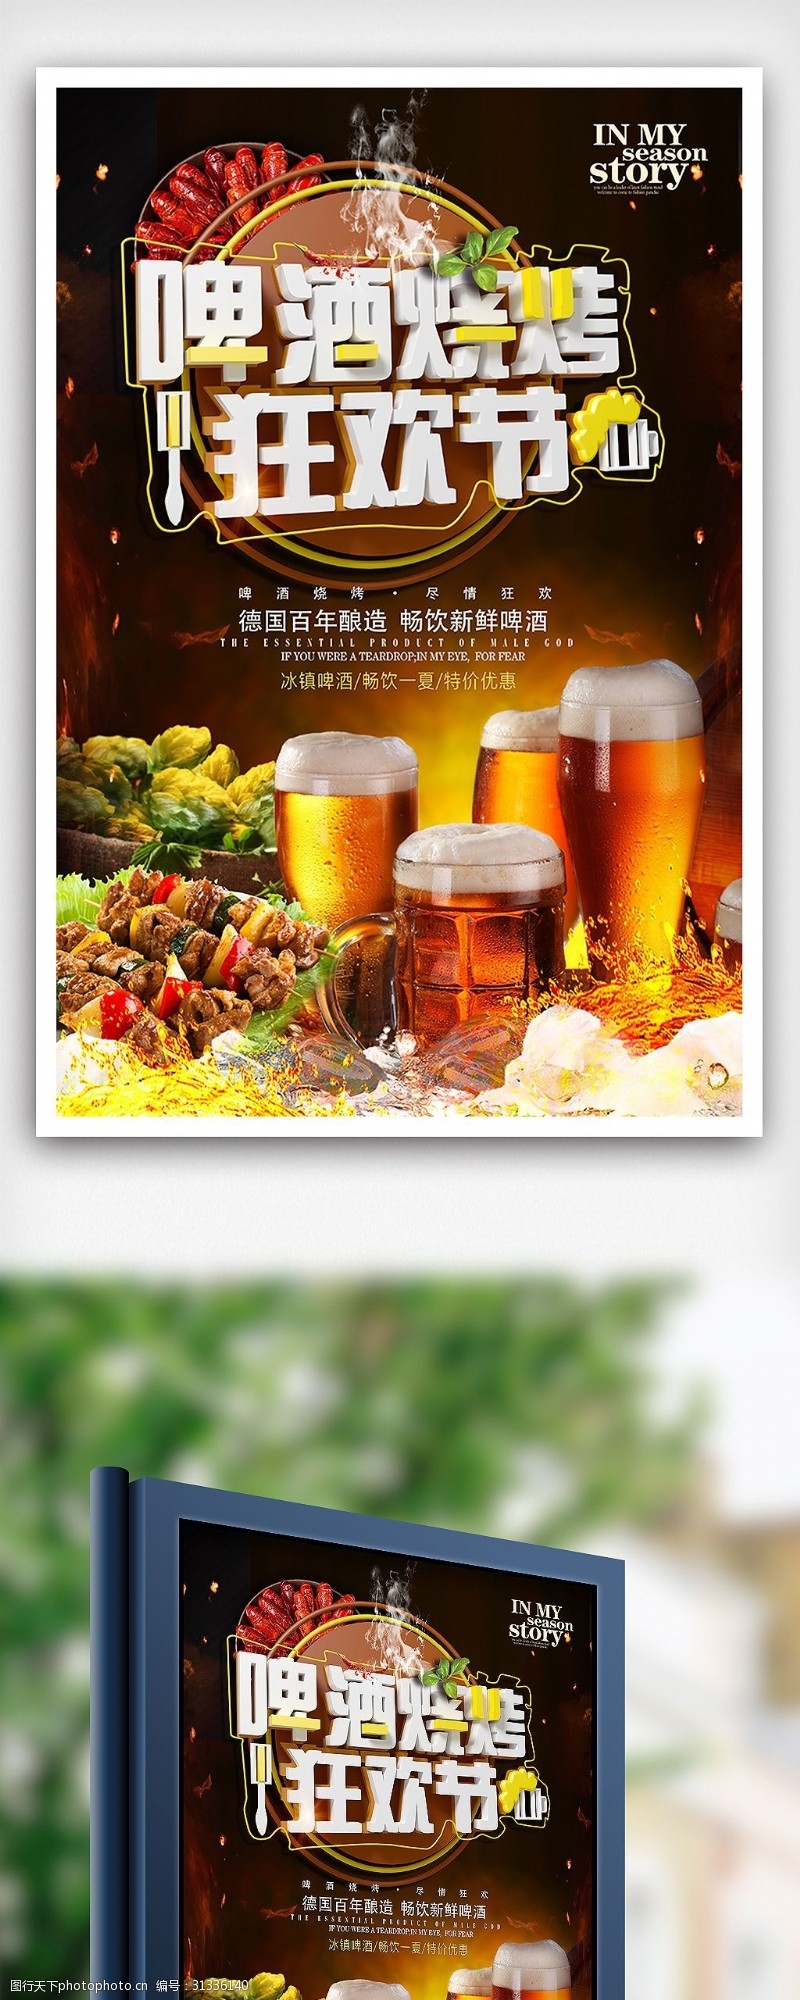 啤酒免费下载夏季啤酒烧烤狂欢节海报设计